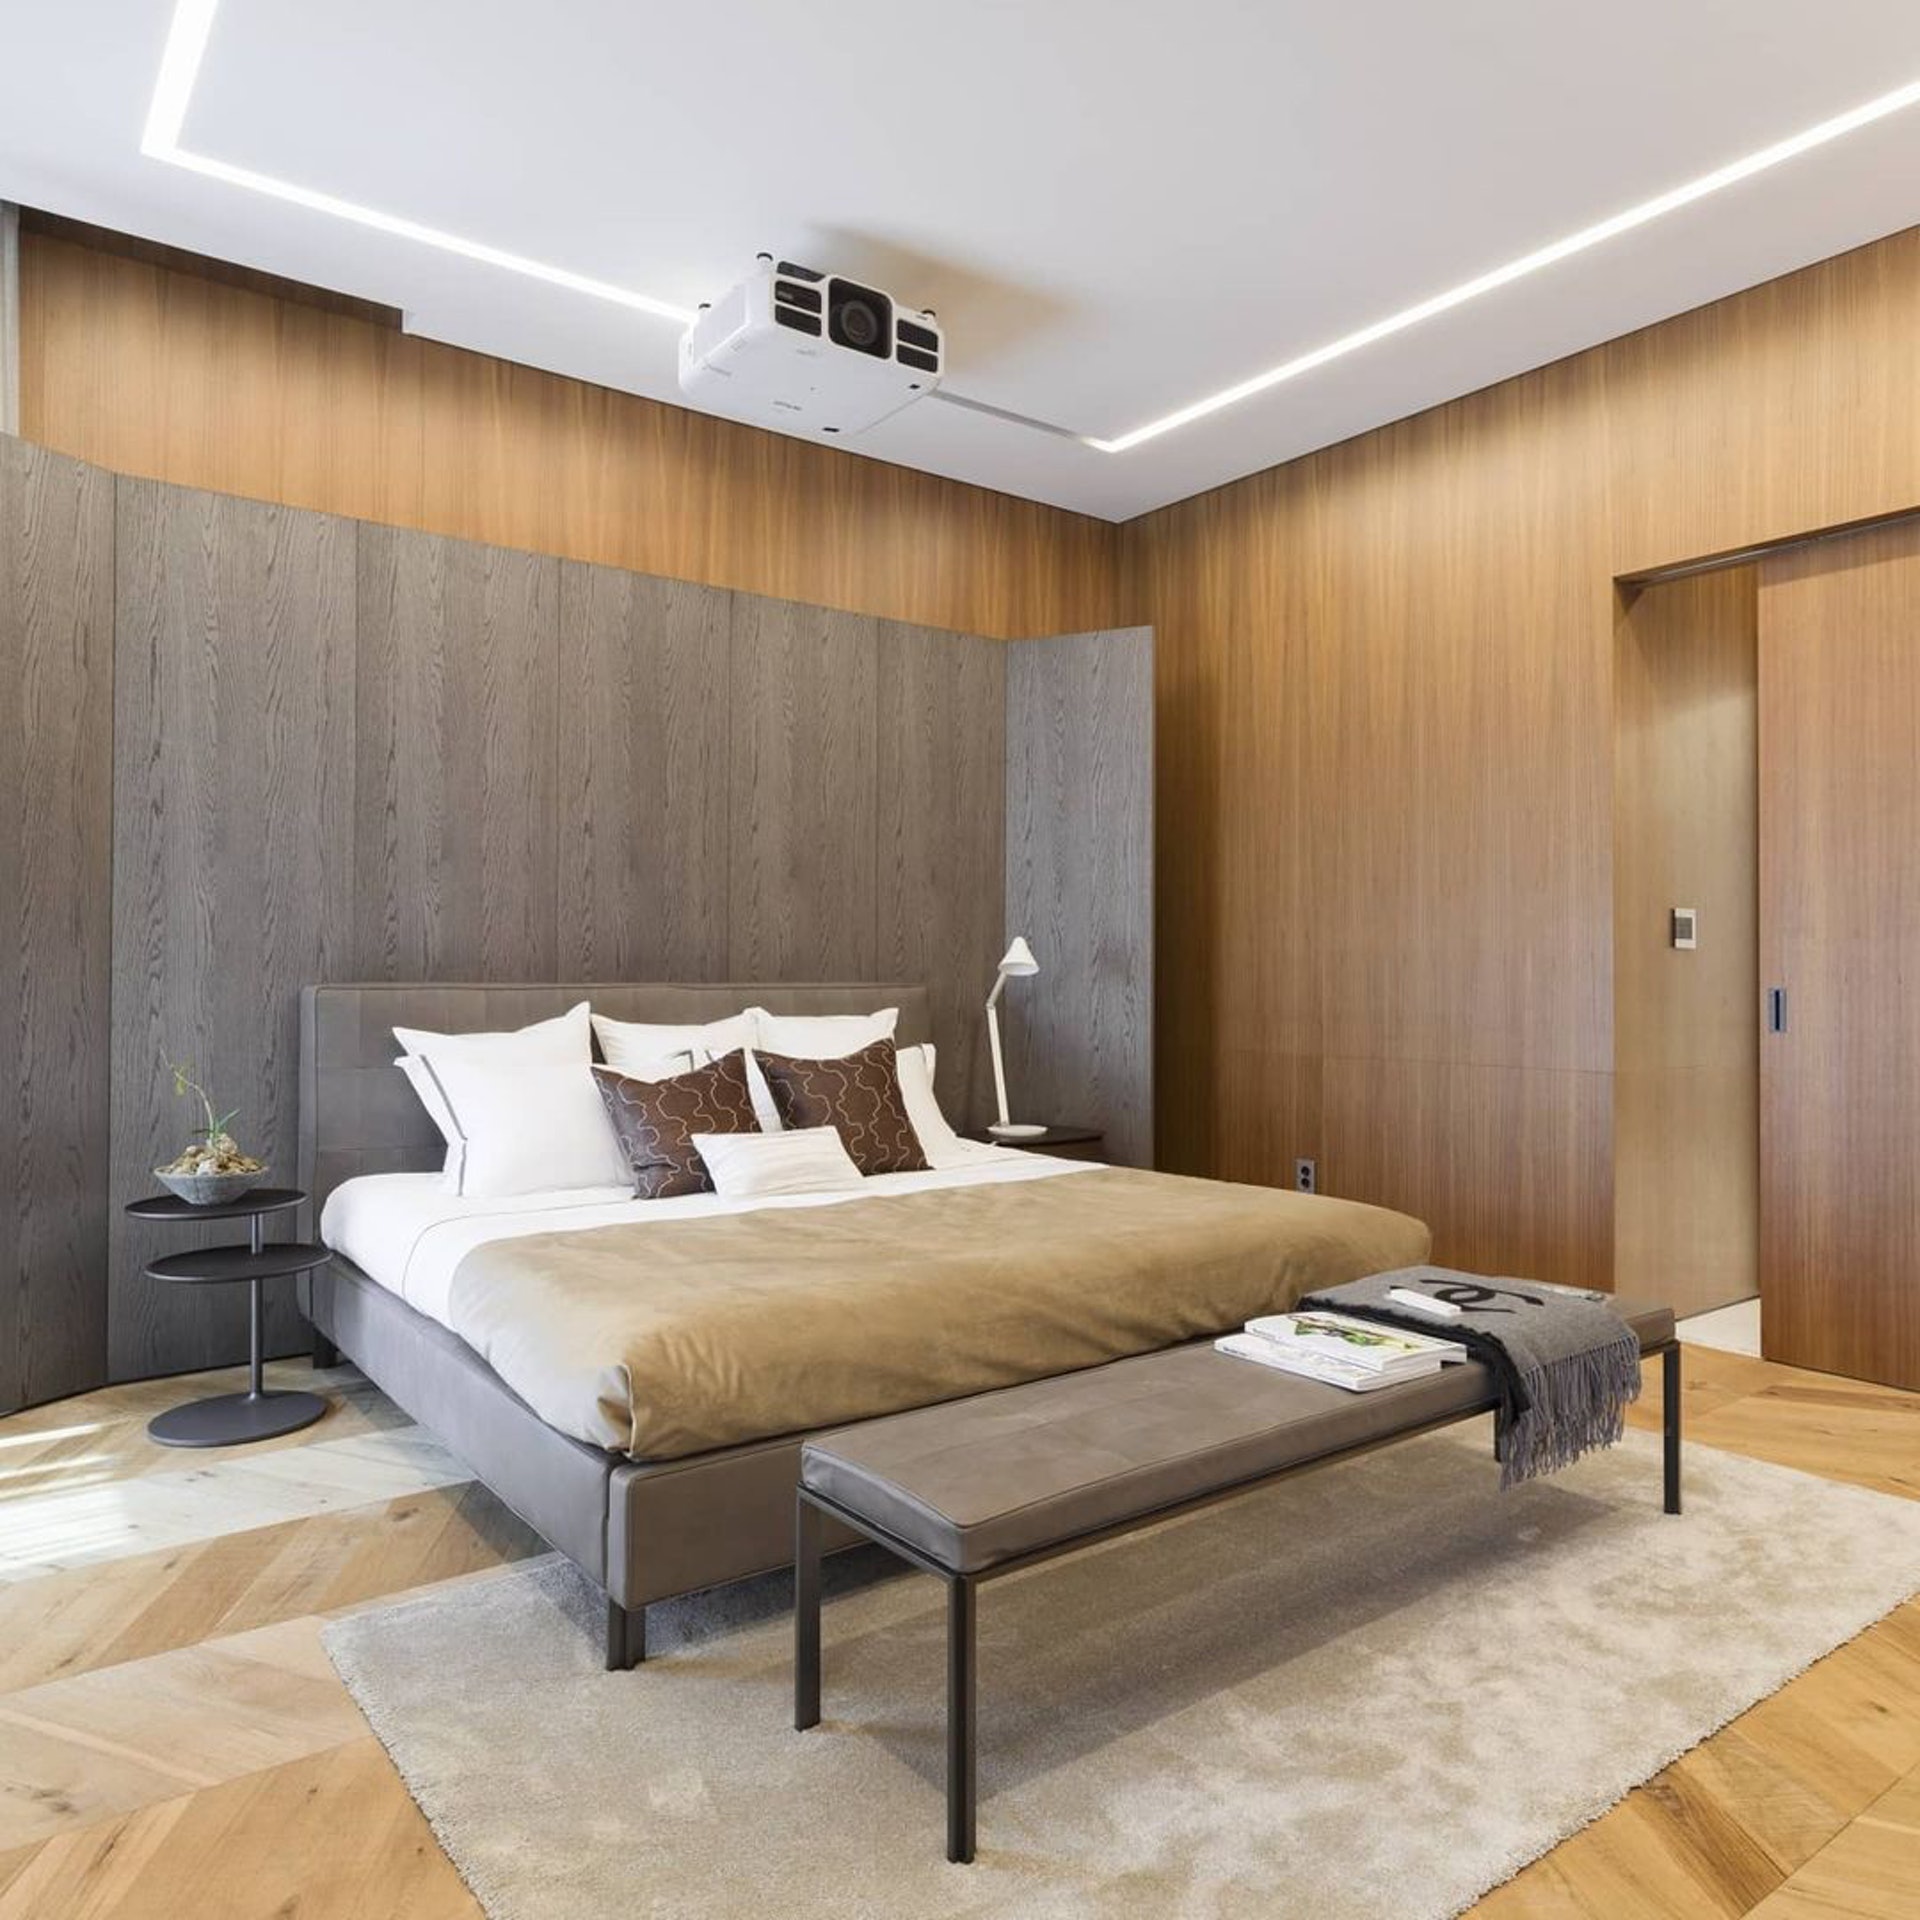 Phòng ngủ được thiết kế với phong cách tối giản, toát lên sự ấm áp nhờ tông màu gỗ và sắc xám trầm ấm.